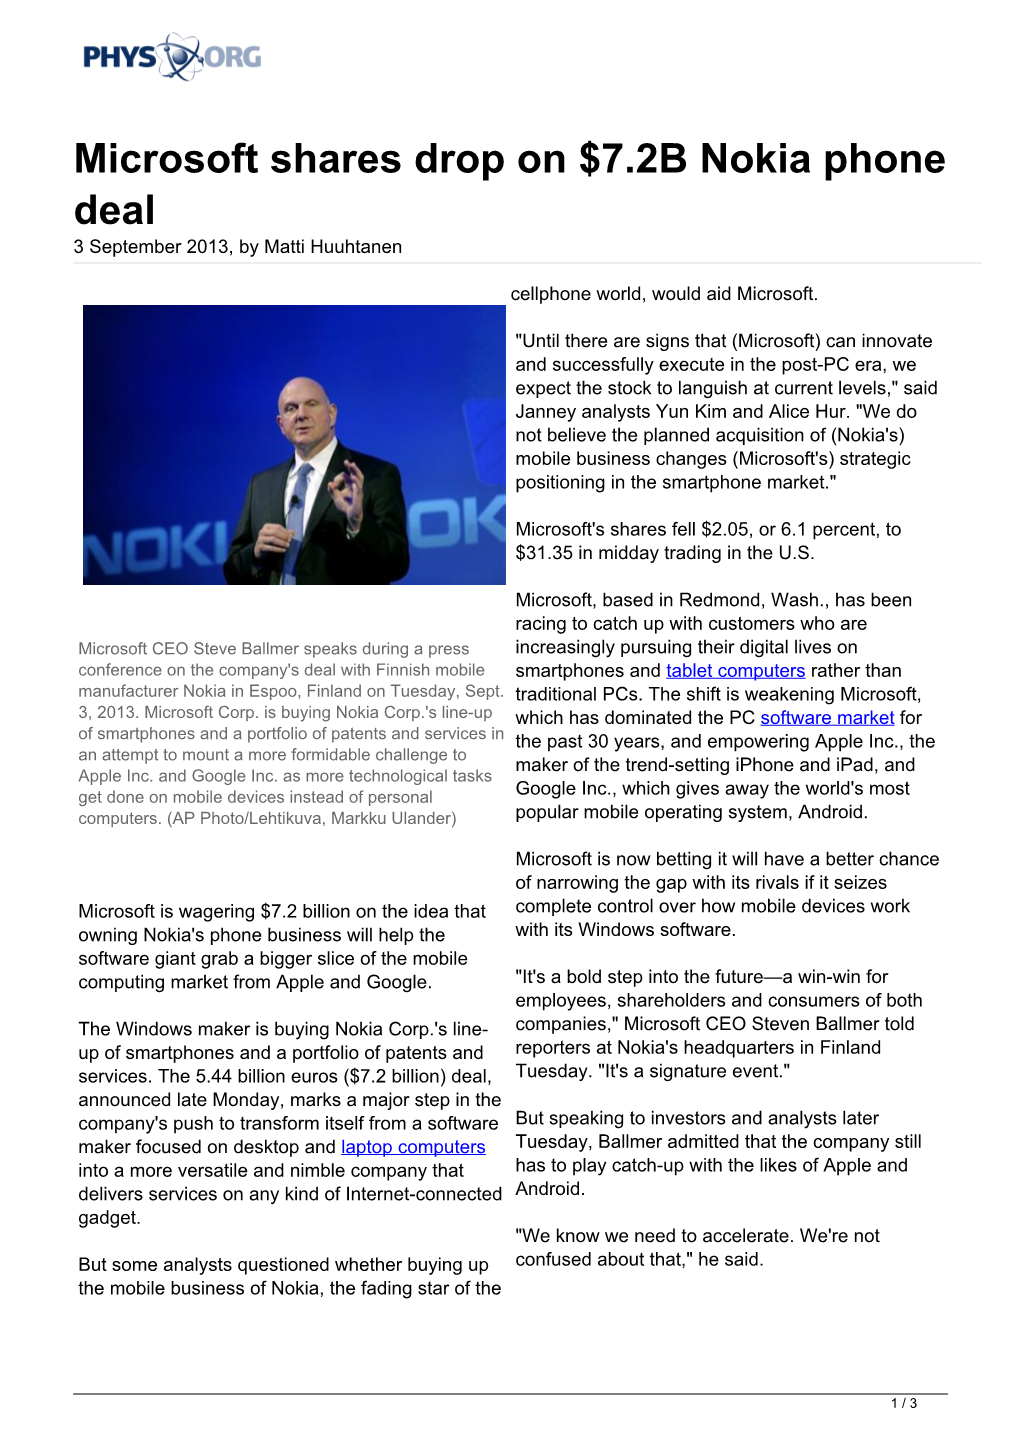 Microsoft Shares Drop on $7.2B Nokia Phone Deal 3 September 2013, by Matti Huuhtanen